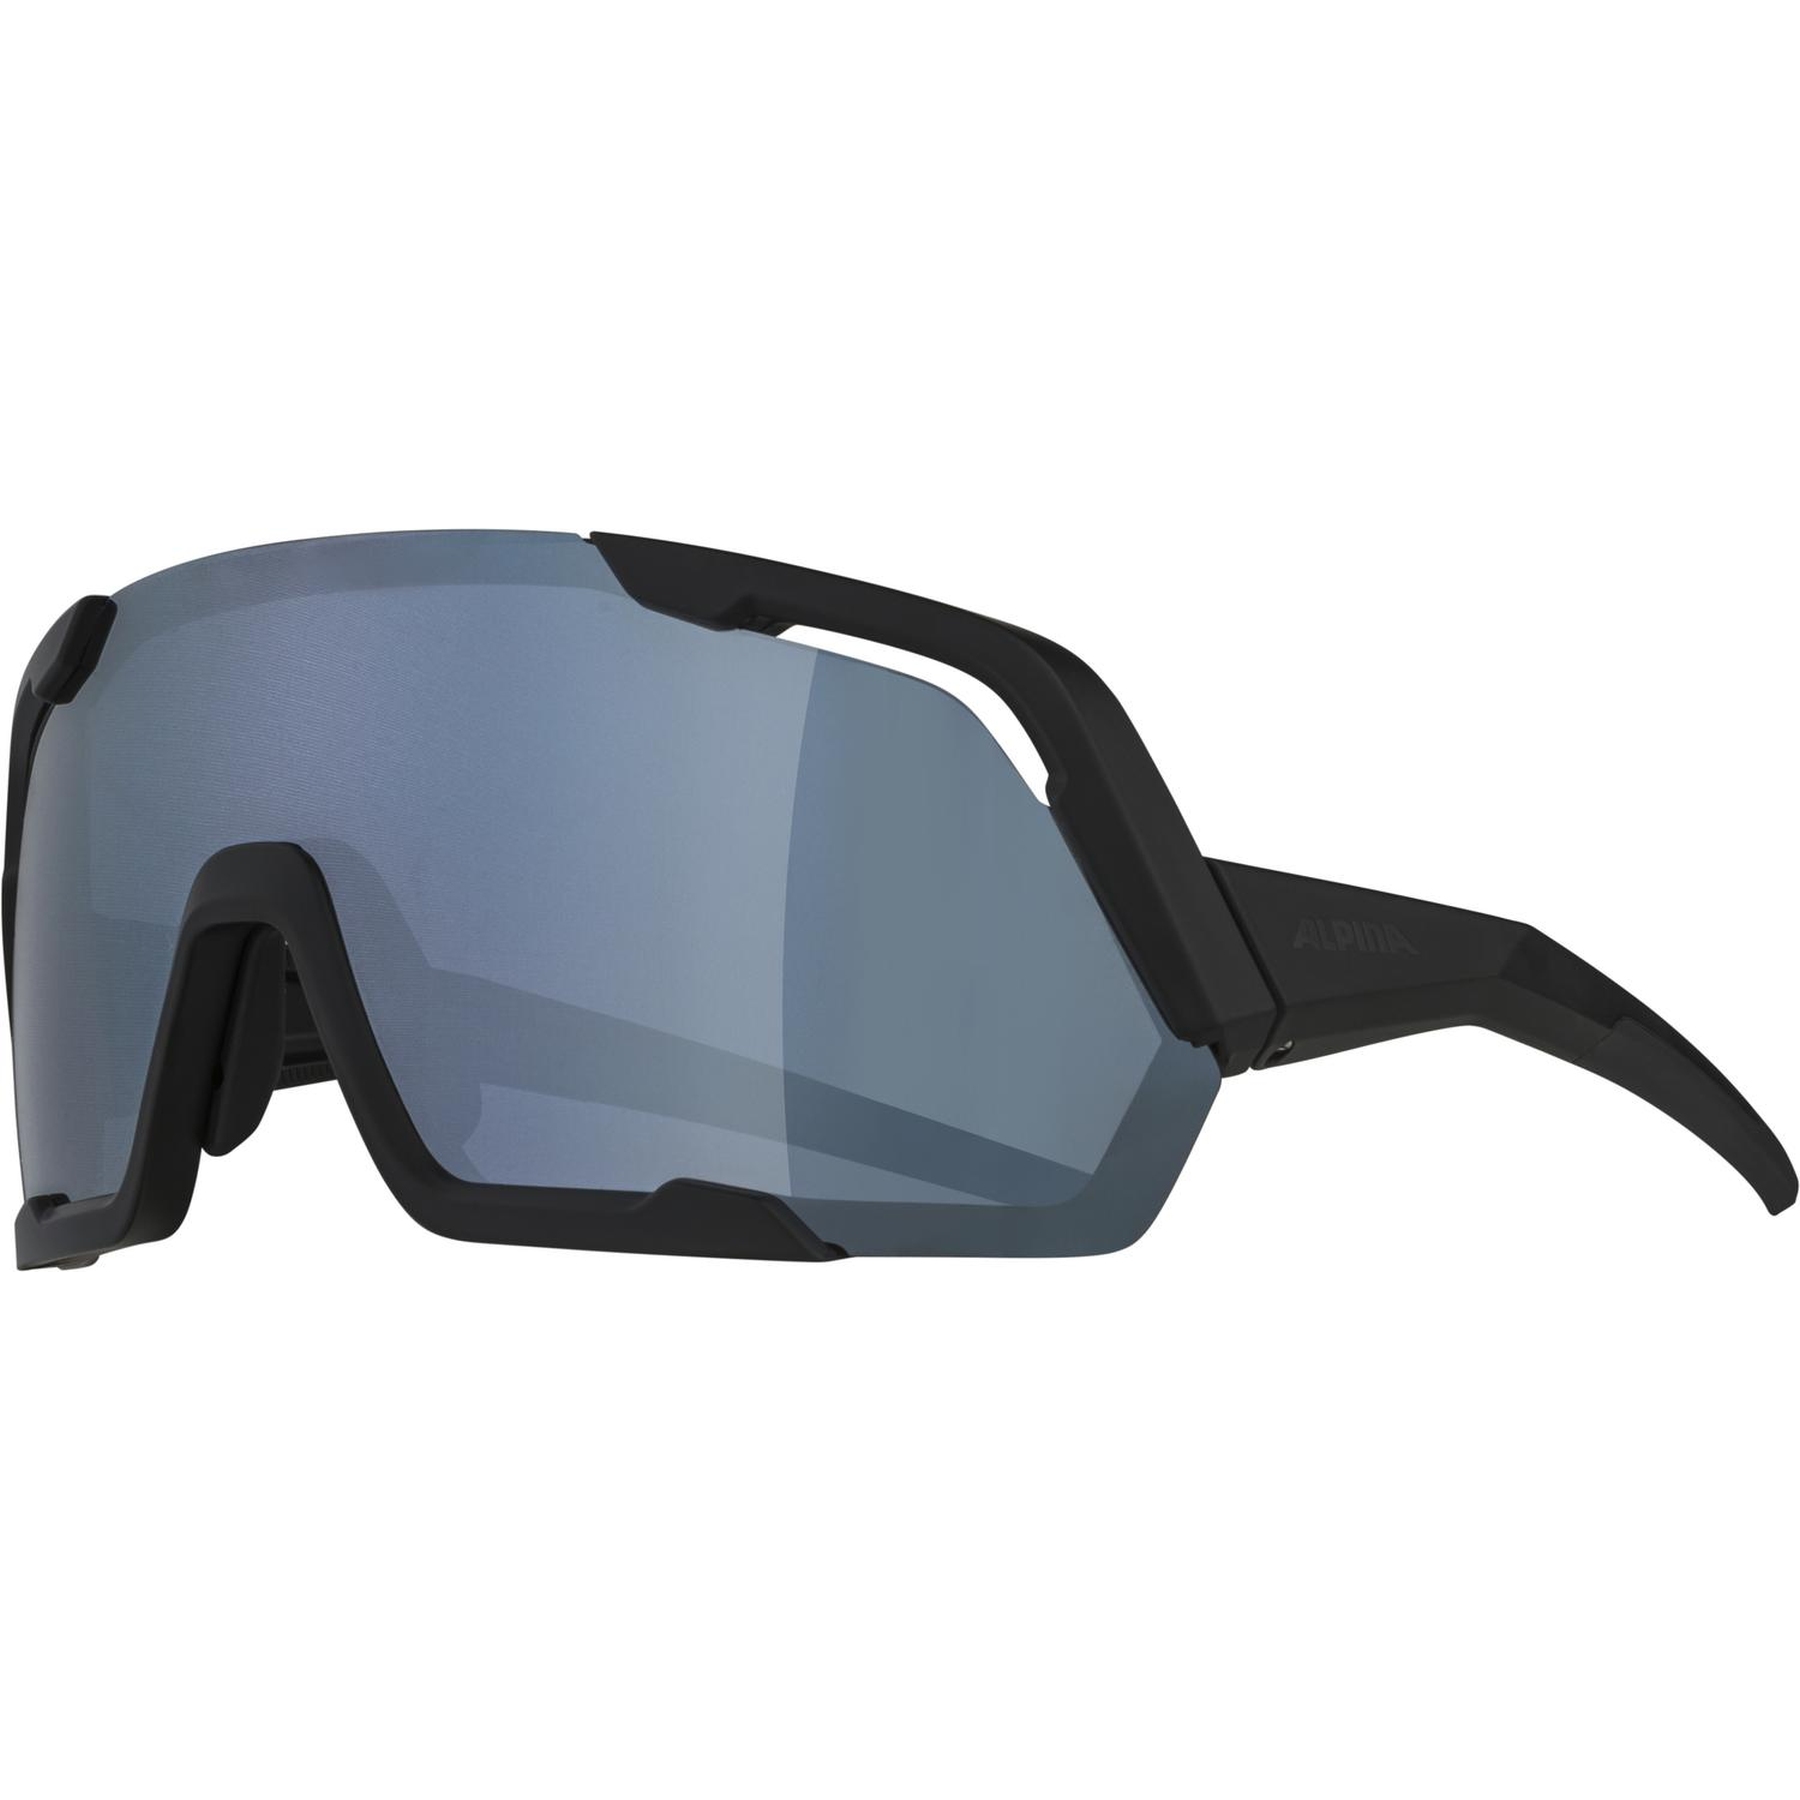 Productfoto van Alpina Rocket Glasses - all black matt/Black